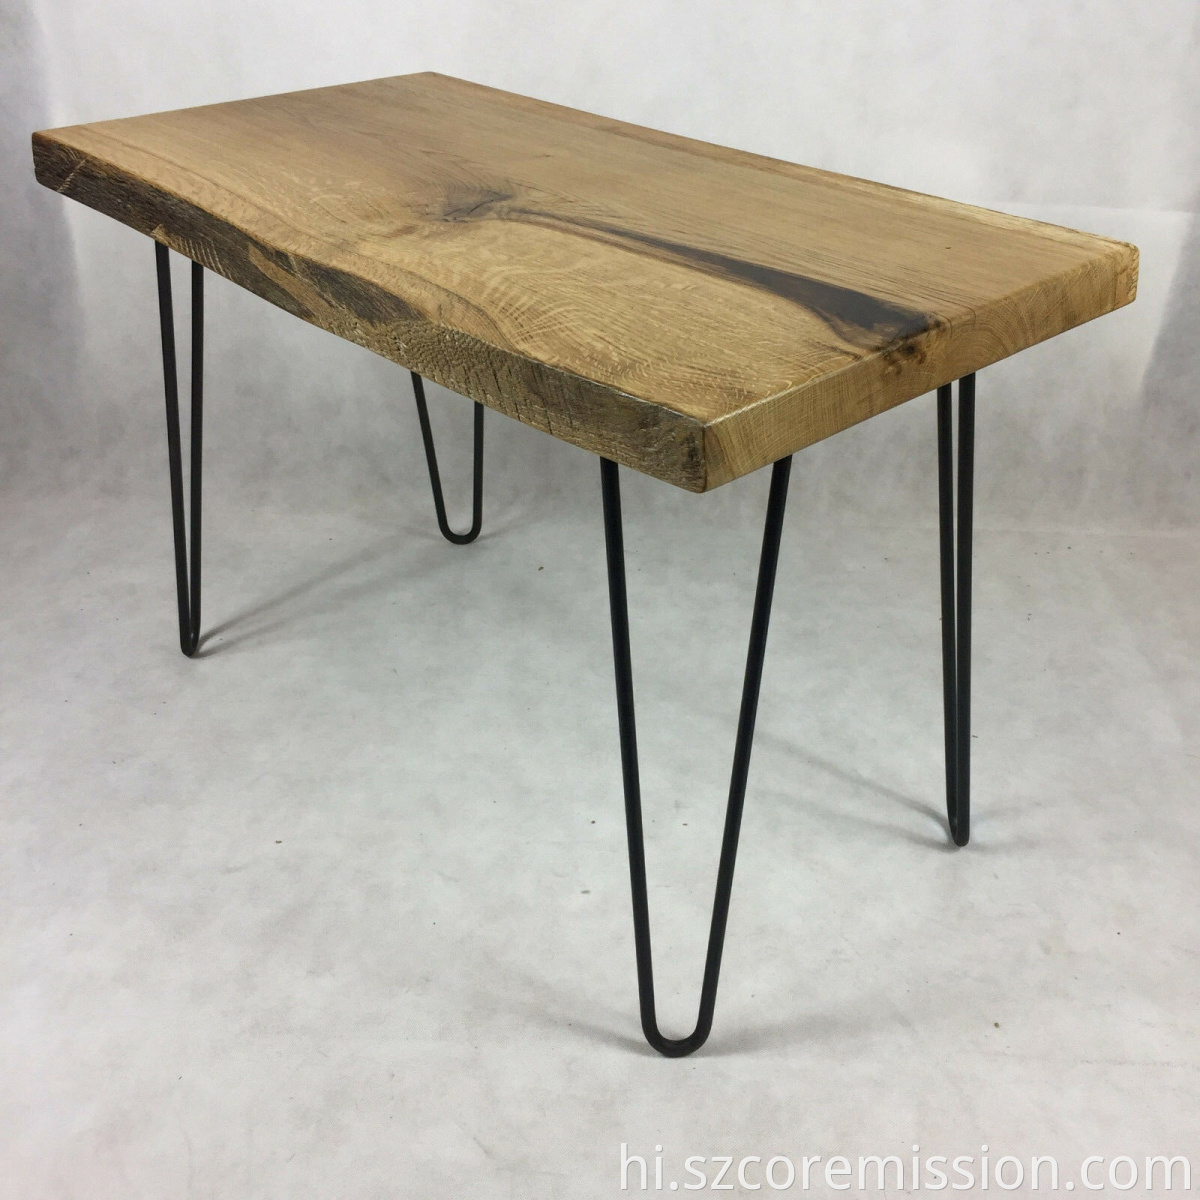 DIY Outdoor Wrought Iron Coffee Table Leg